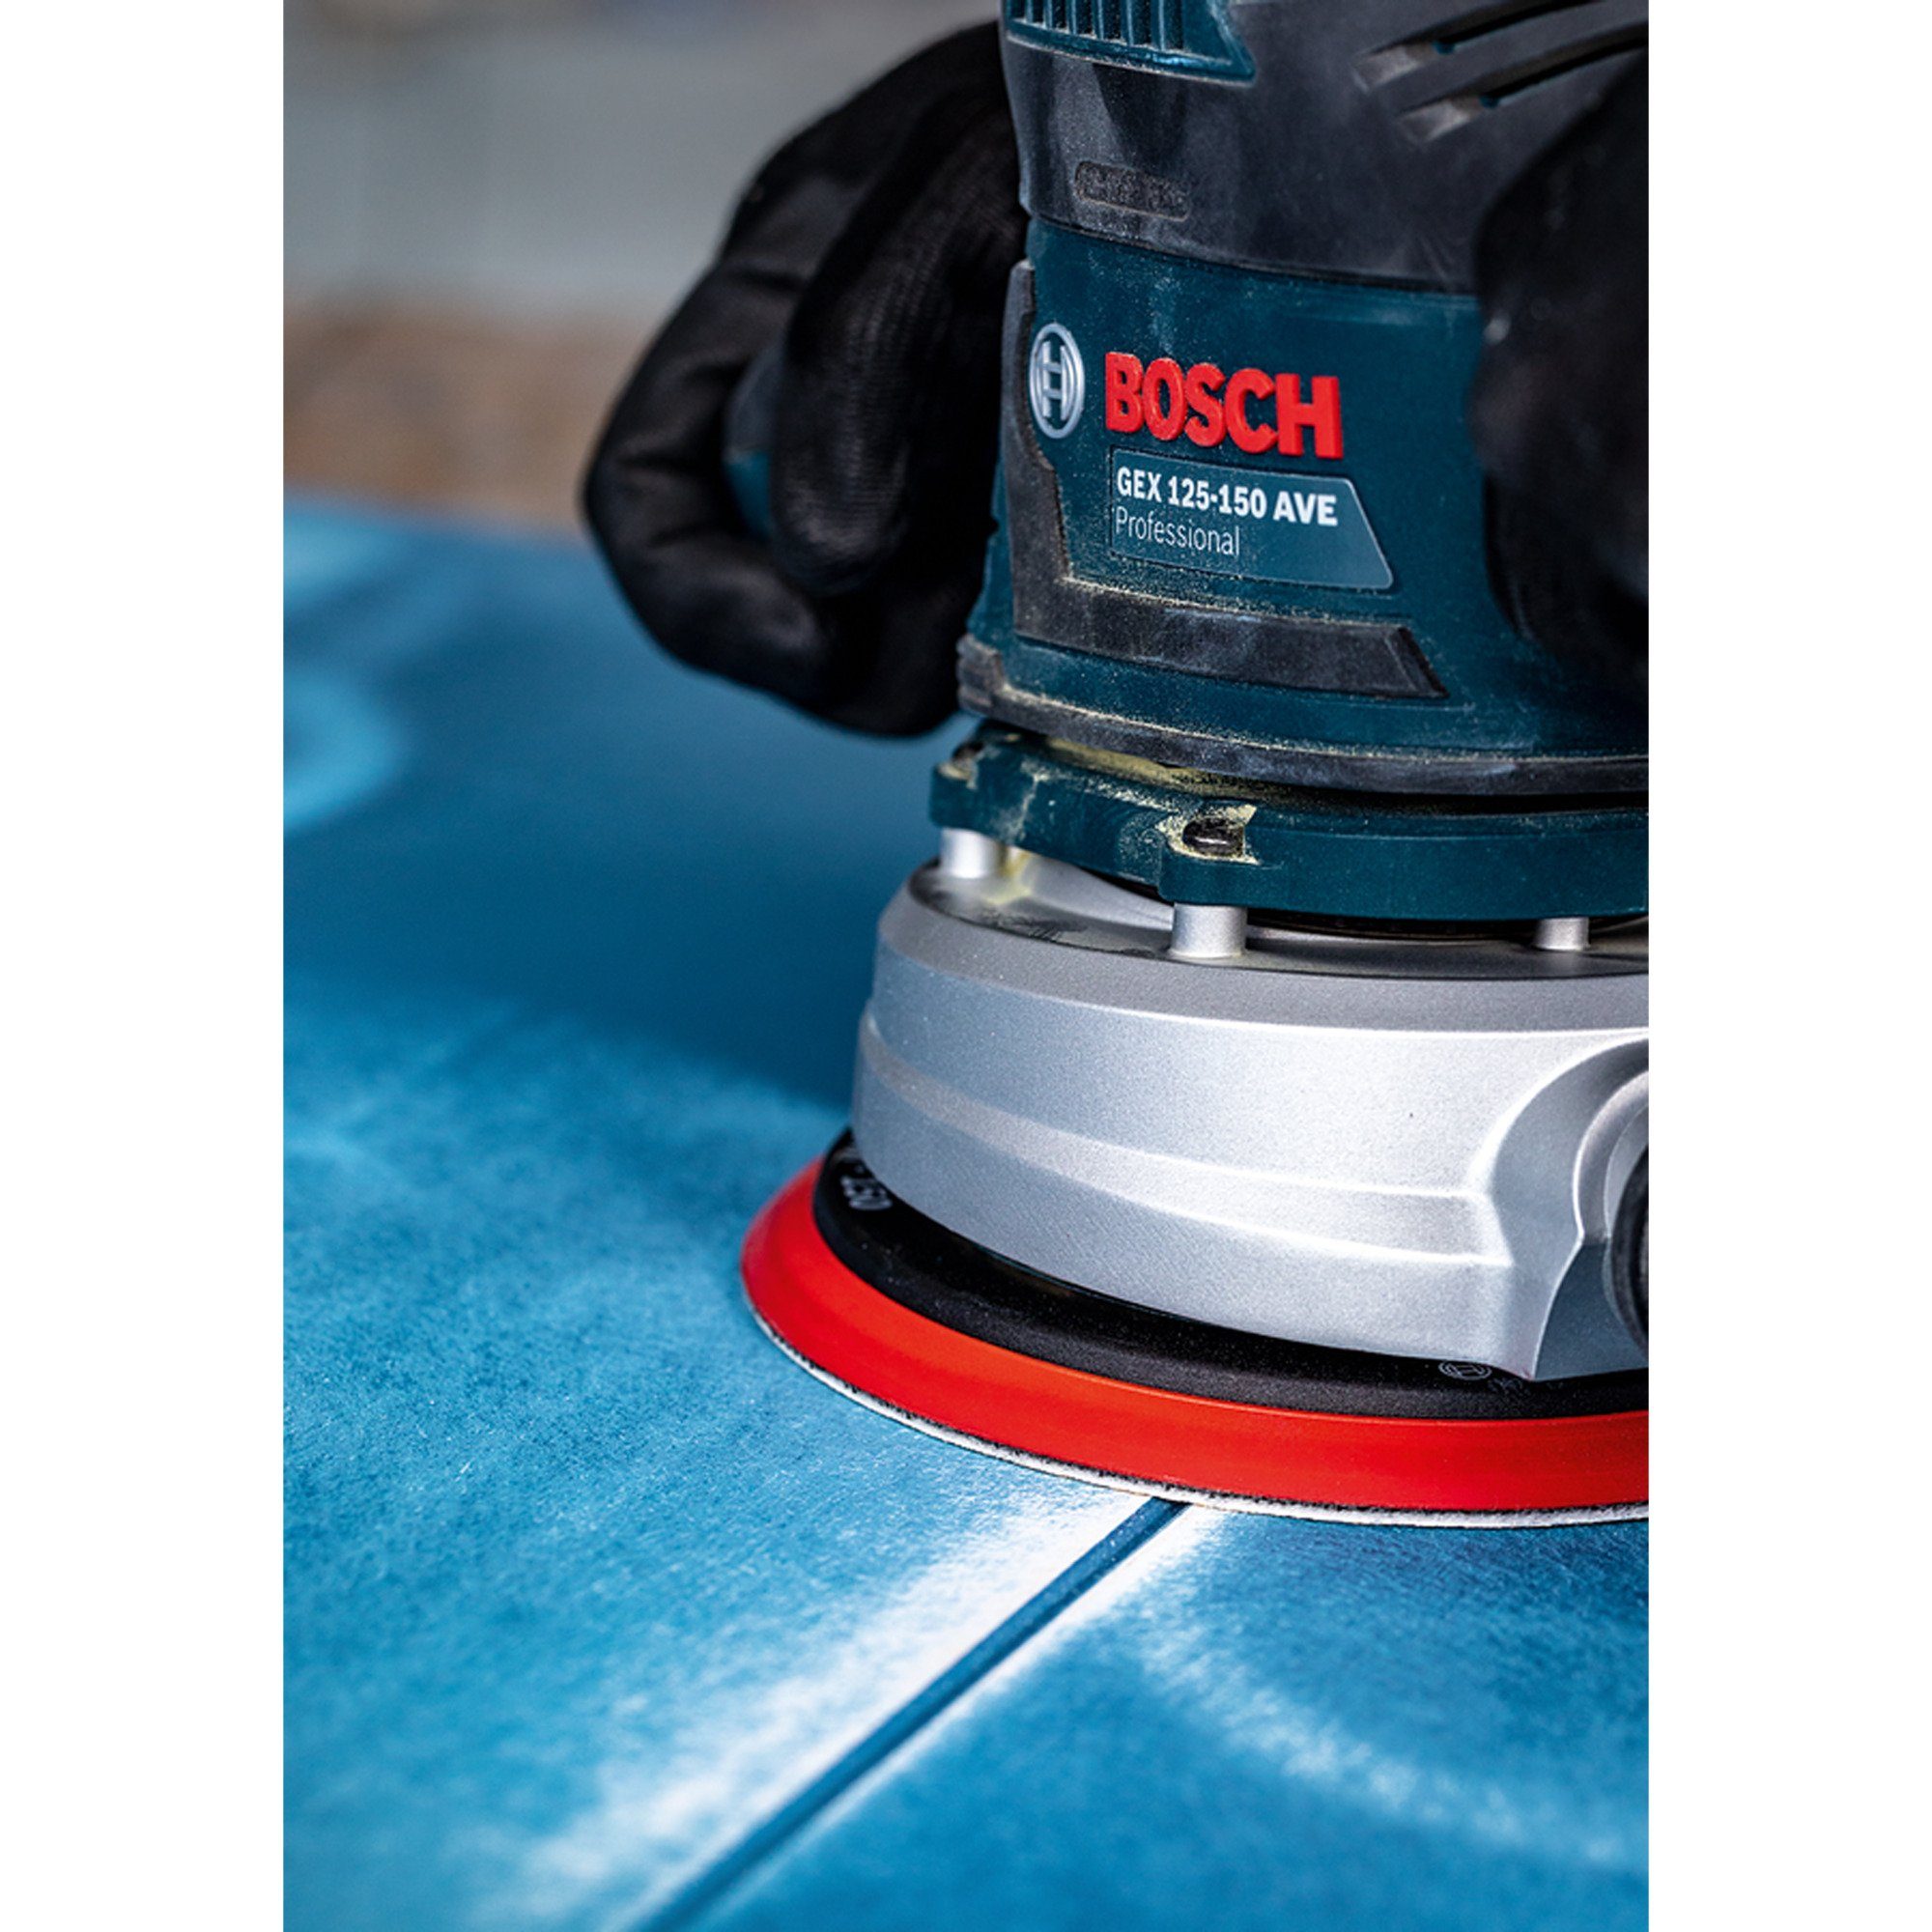 BOSCH Schleifscheibe Bosch Professional Expert C470 Schleifblatt, Ø